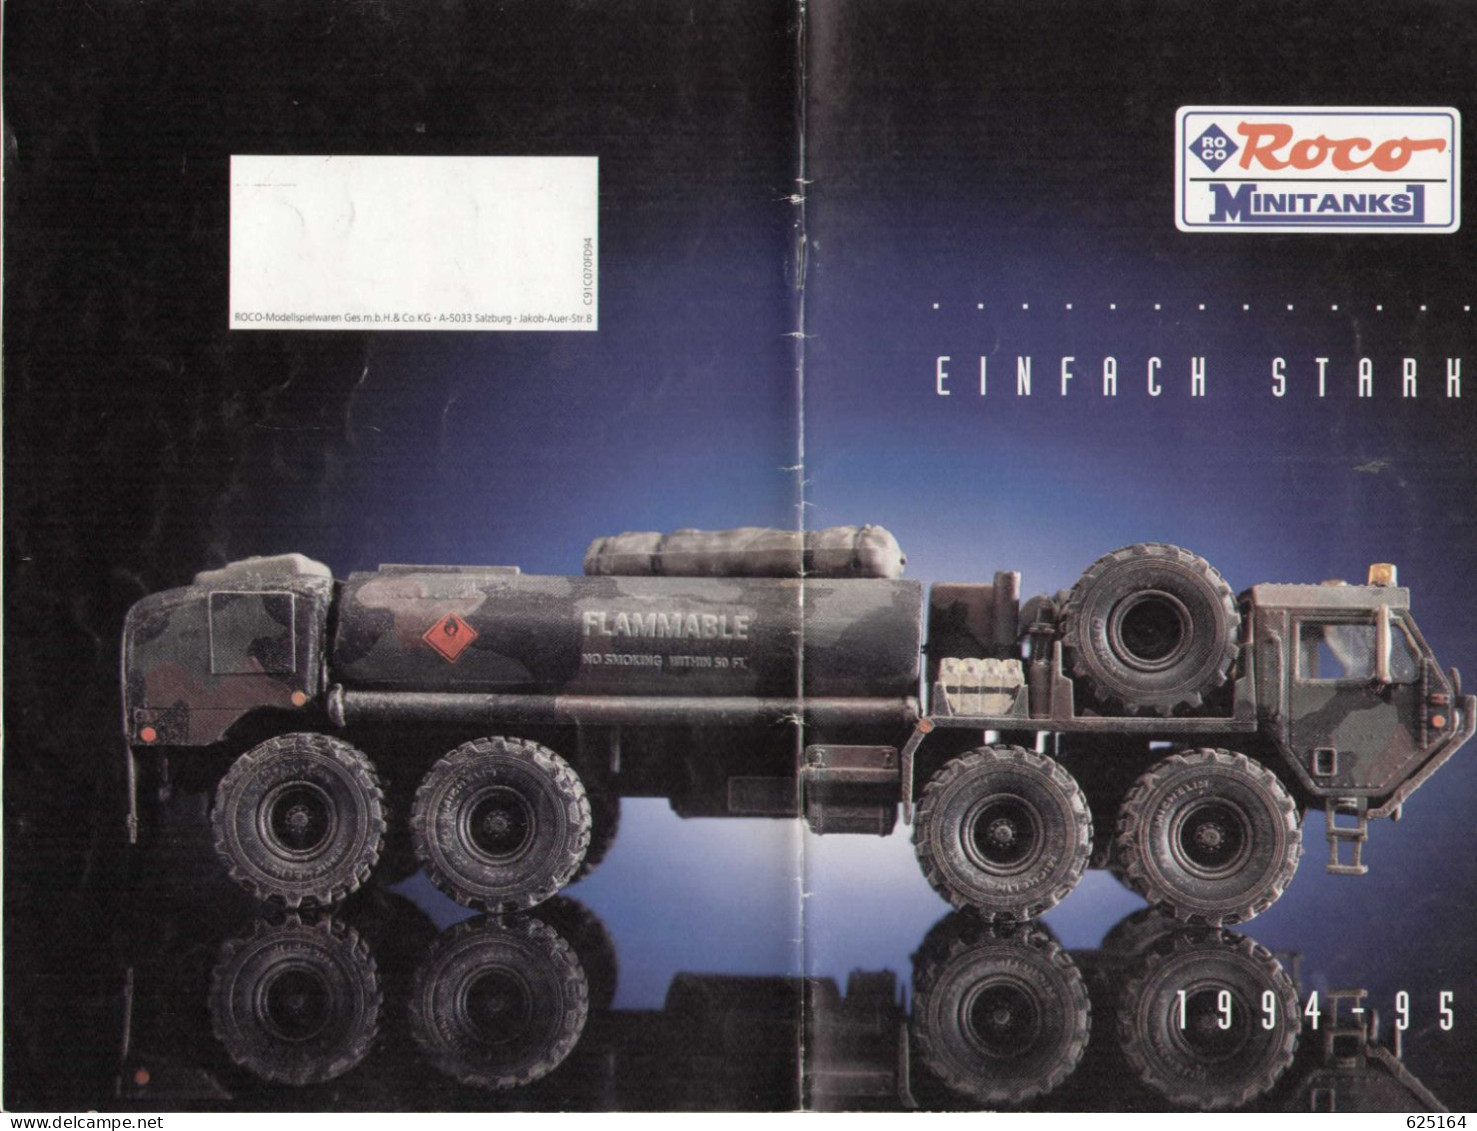 Catalogue ROCO Minitanks 1994-95 Einfach Starh - Allemand